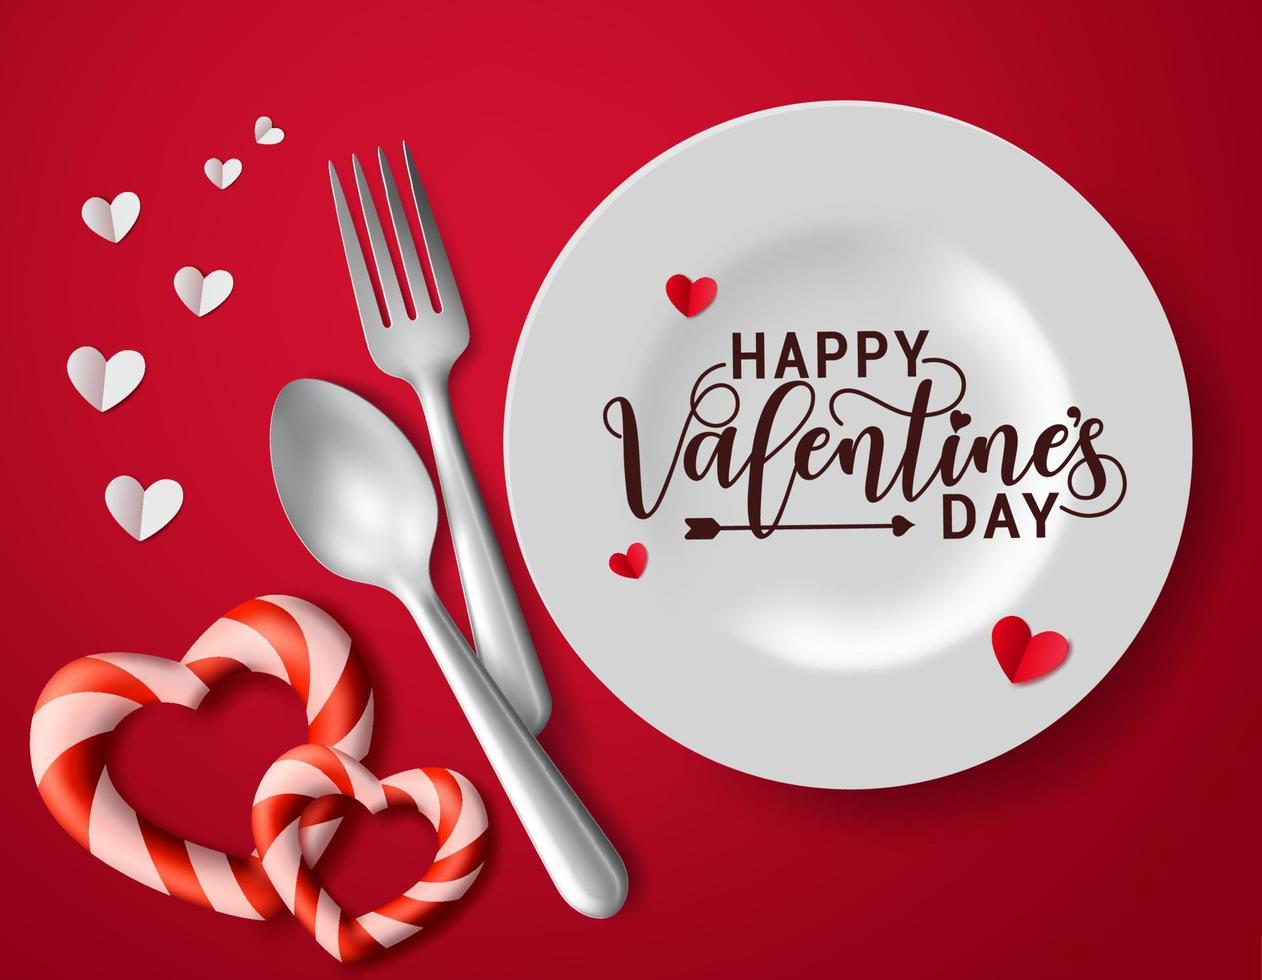 glad alla hjärtans dag romantiska datum vektor koncept. valentine hälsningstext med romantiska datum element hjärta, hjärtan pappersklipp, sked, gaffel och vit platta i röd bakgrund. vektor illustration.